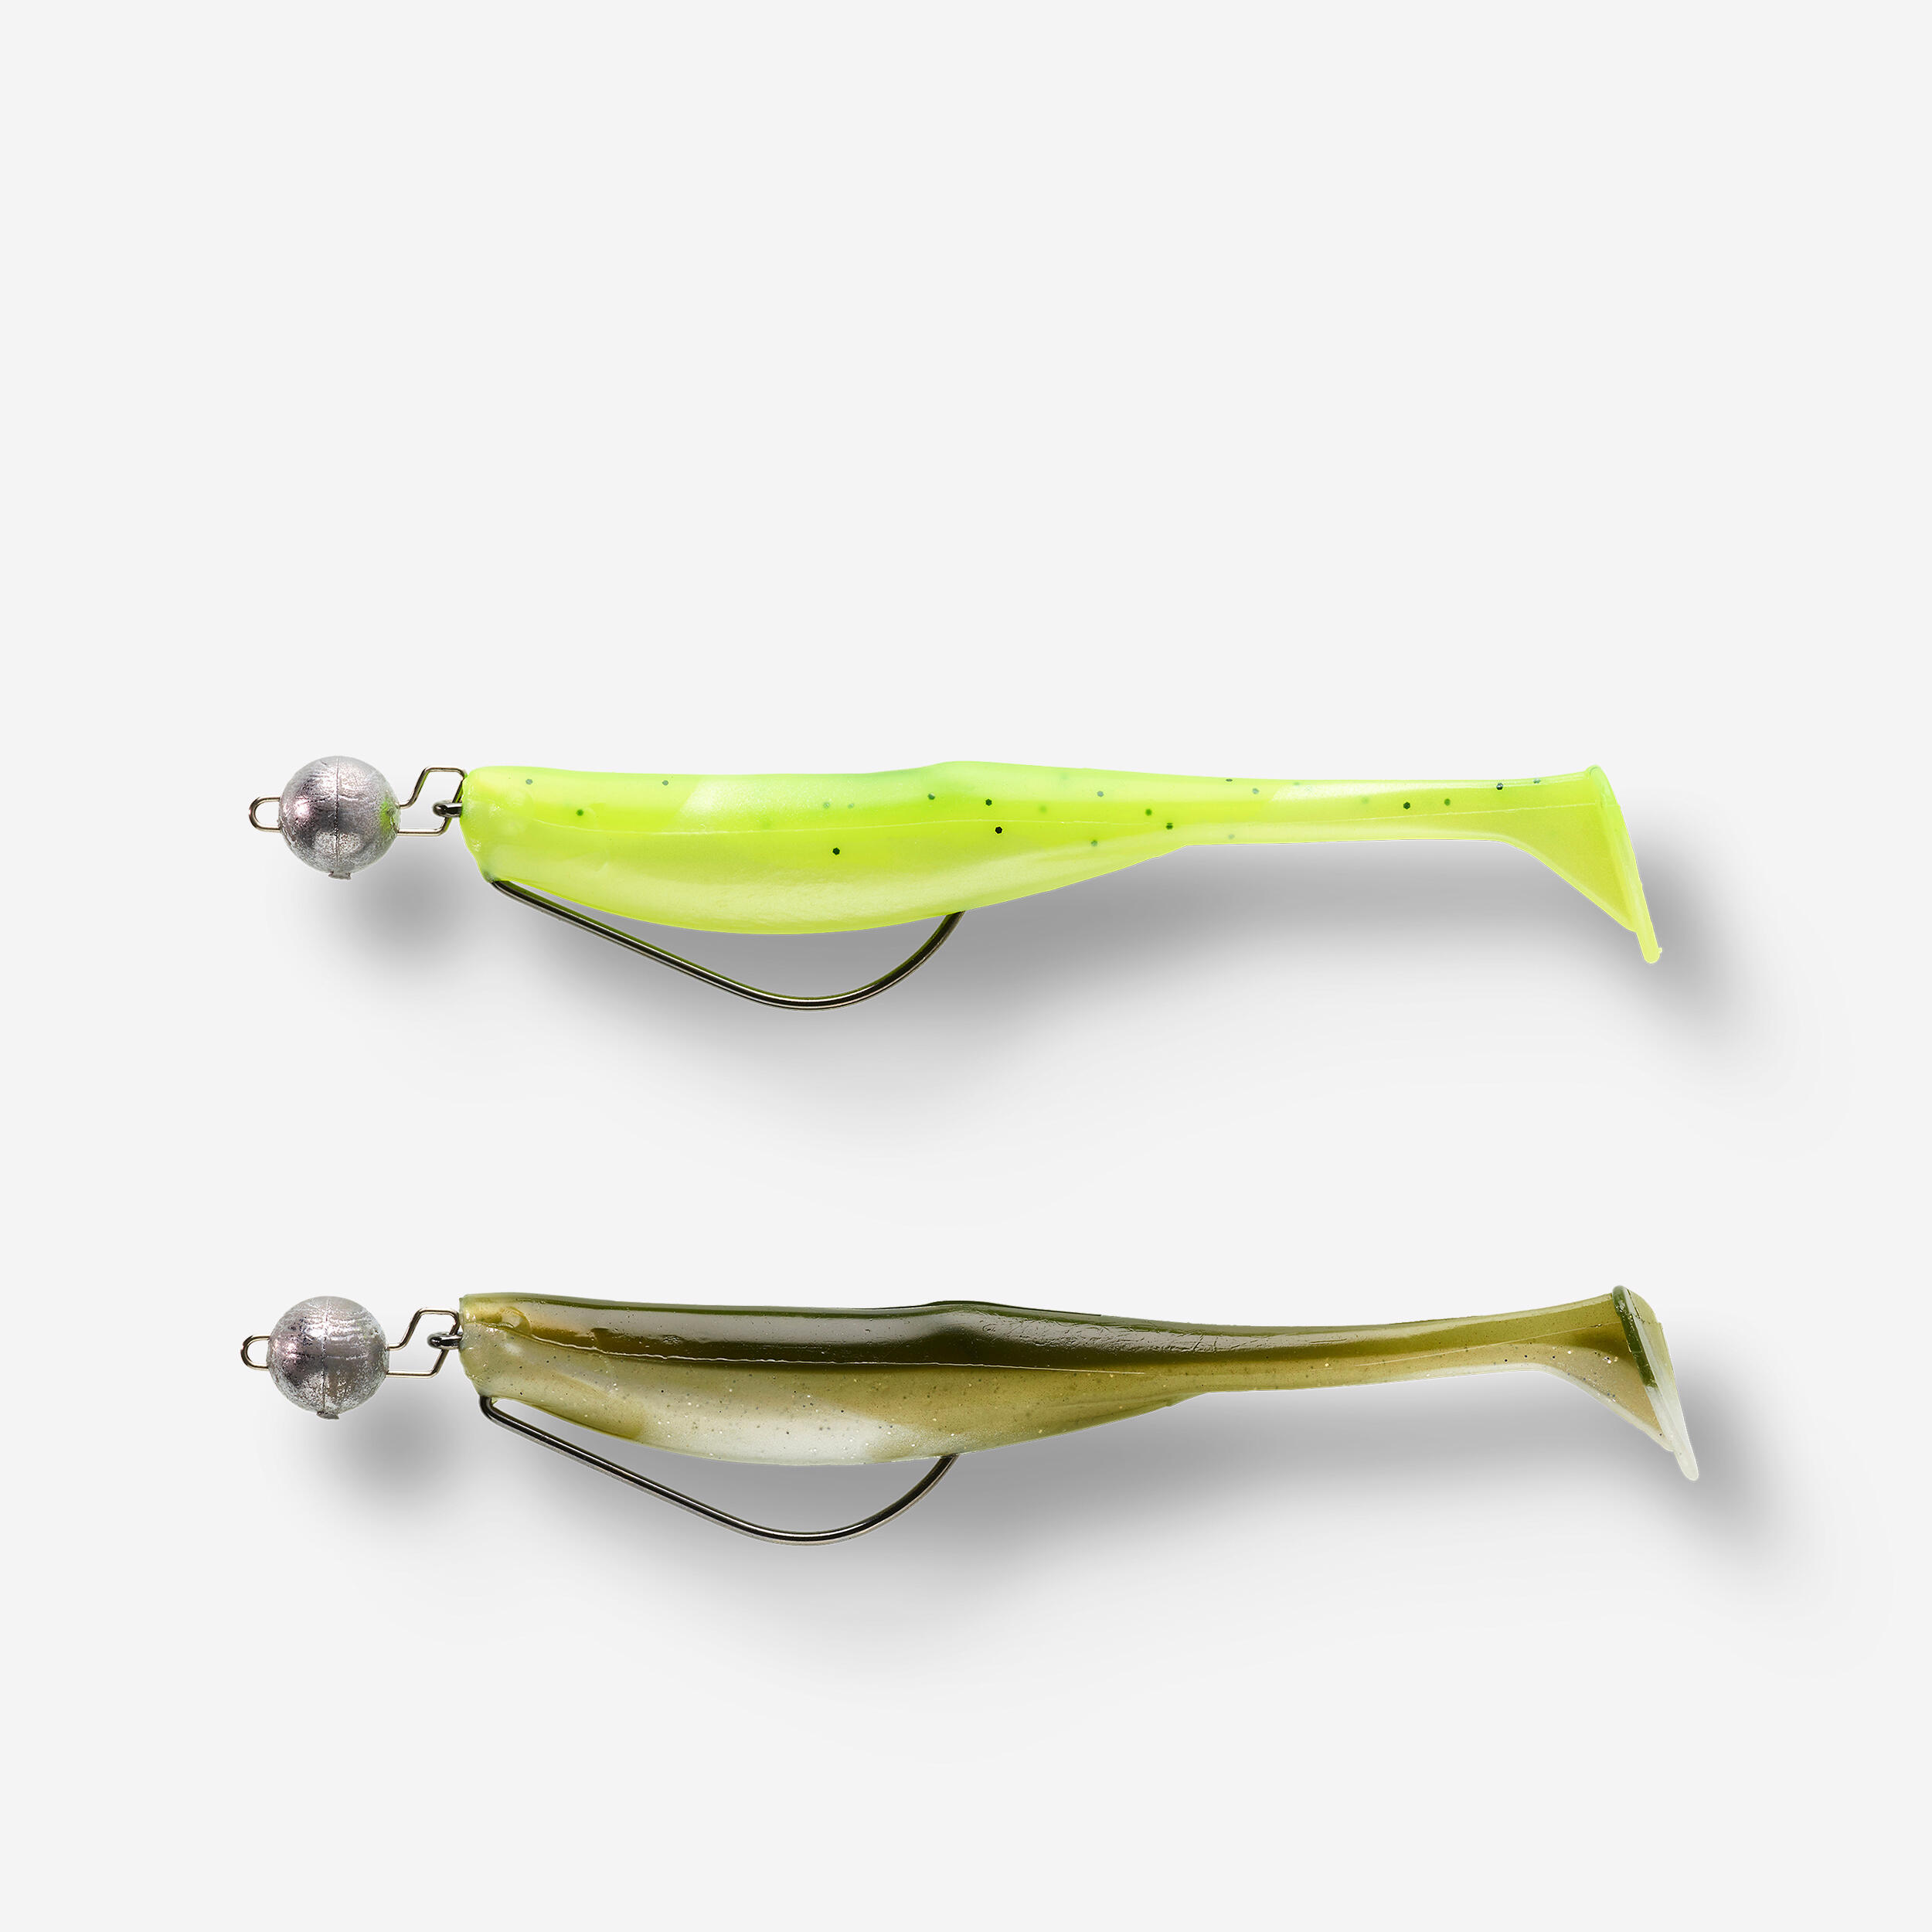 130 lure fishing soft bait kit - Vert fluo, Olive green - Caperlan -  Decathlon